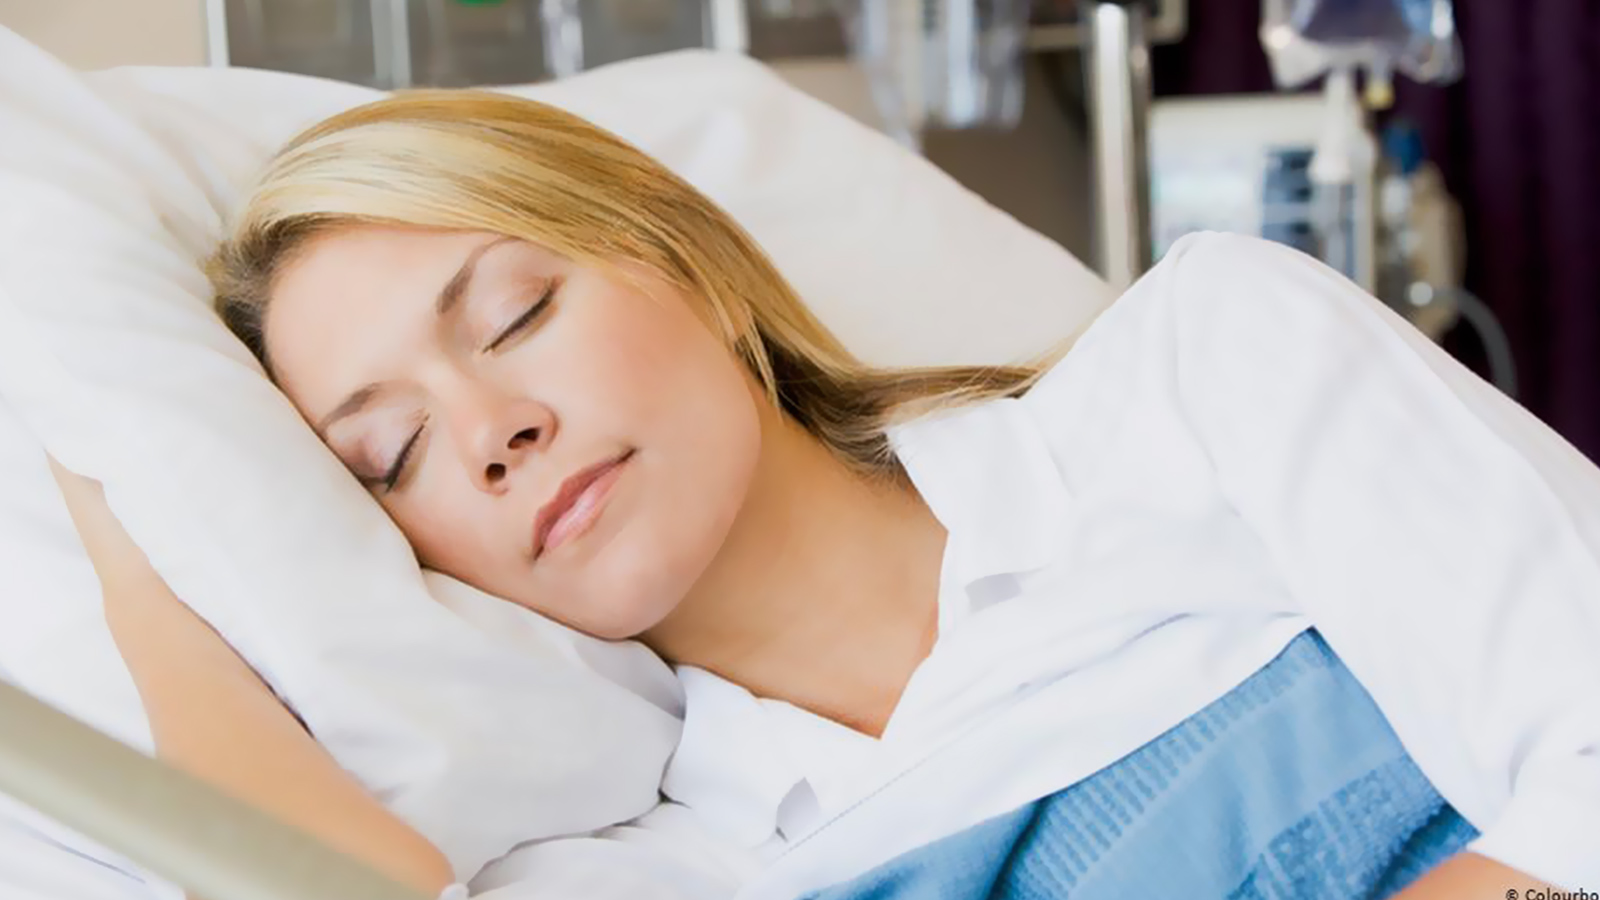 العد قبل النوم وسيلة فعالة للتخلص من الأرق المصاحب للنوم (وكالات)